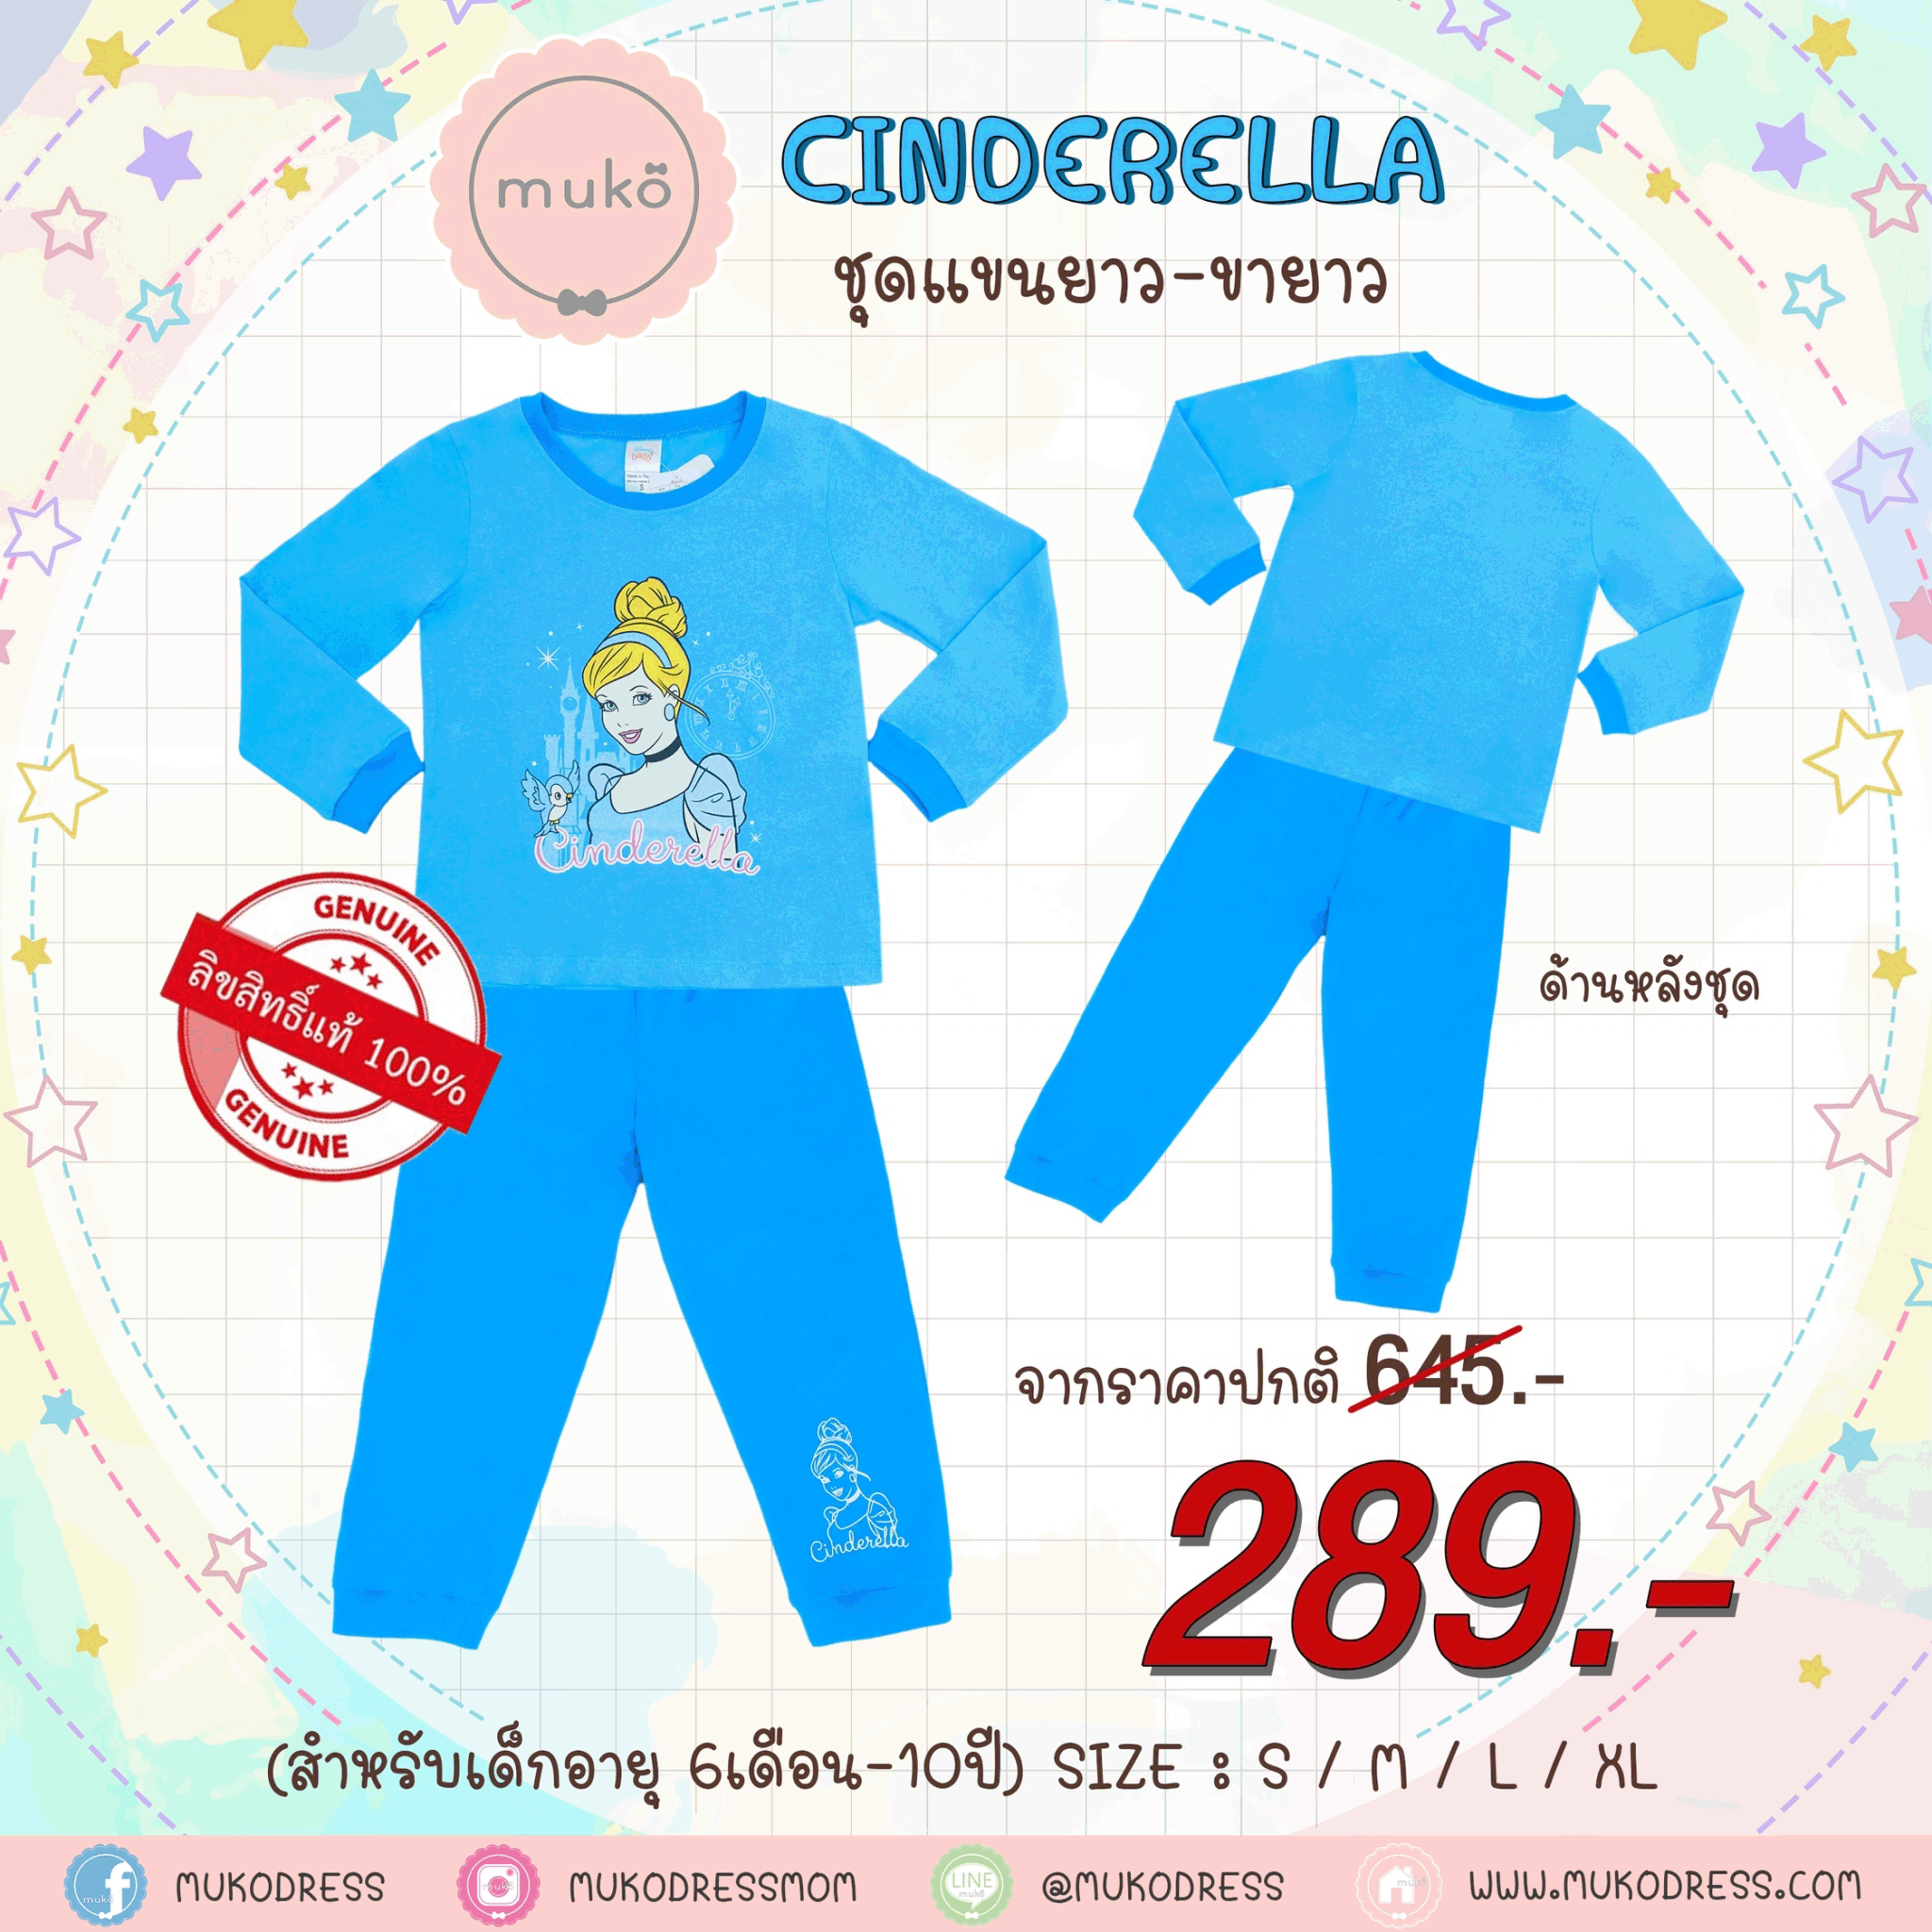 ชุดเด็ก 6-7 ขวบ แขนยาว-ขายาว (Size L) DPC127-05-XL-Blue L ลาย เจ้าหญิงซินเดอเรลล่า Cinderella สีฟ้า (เจ้าหญิงและนกน้อย)